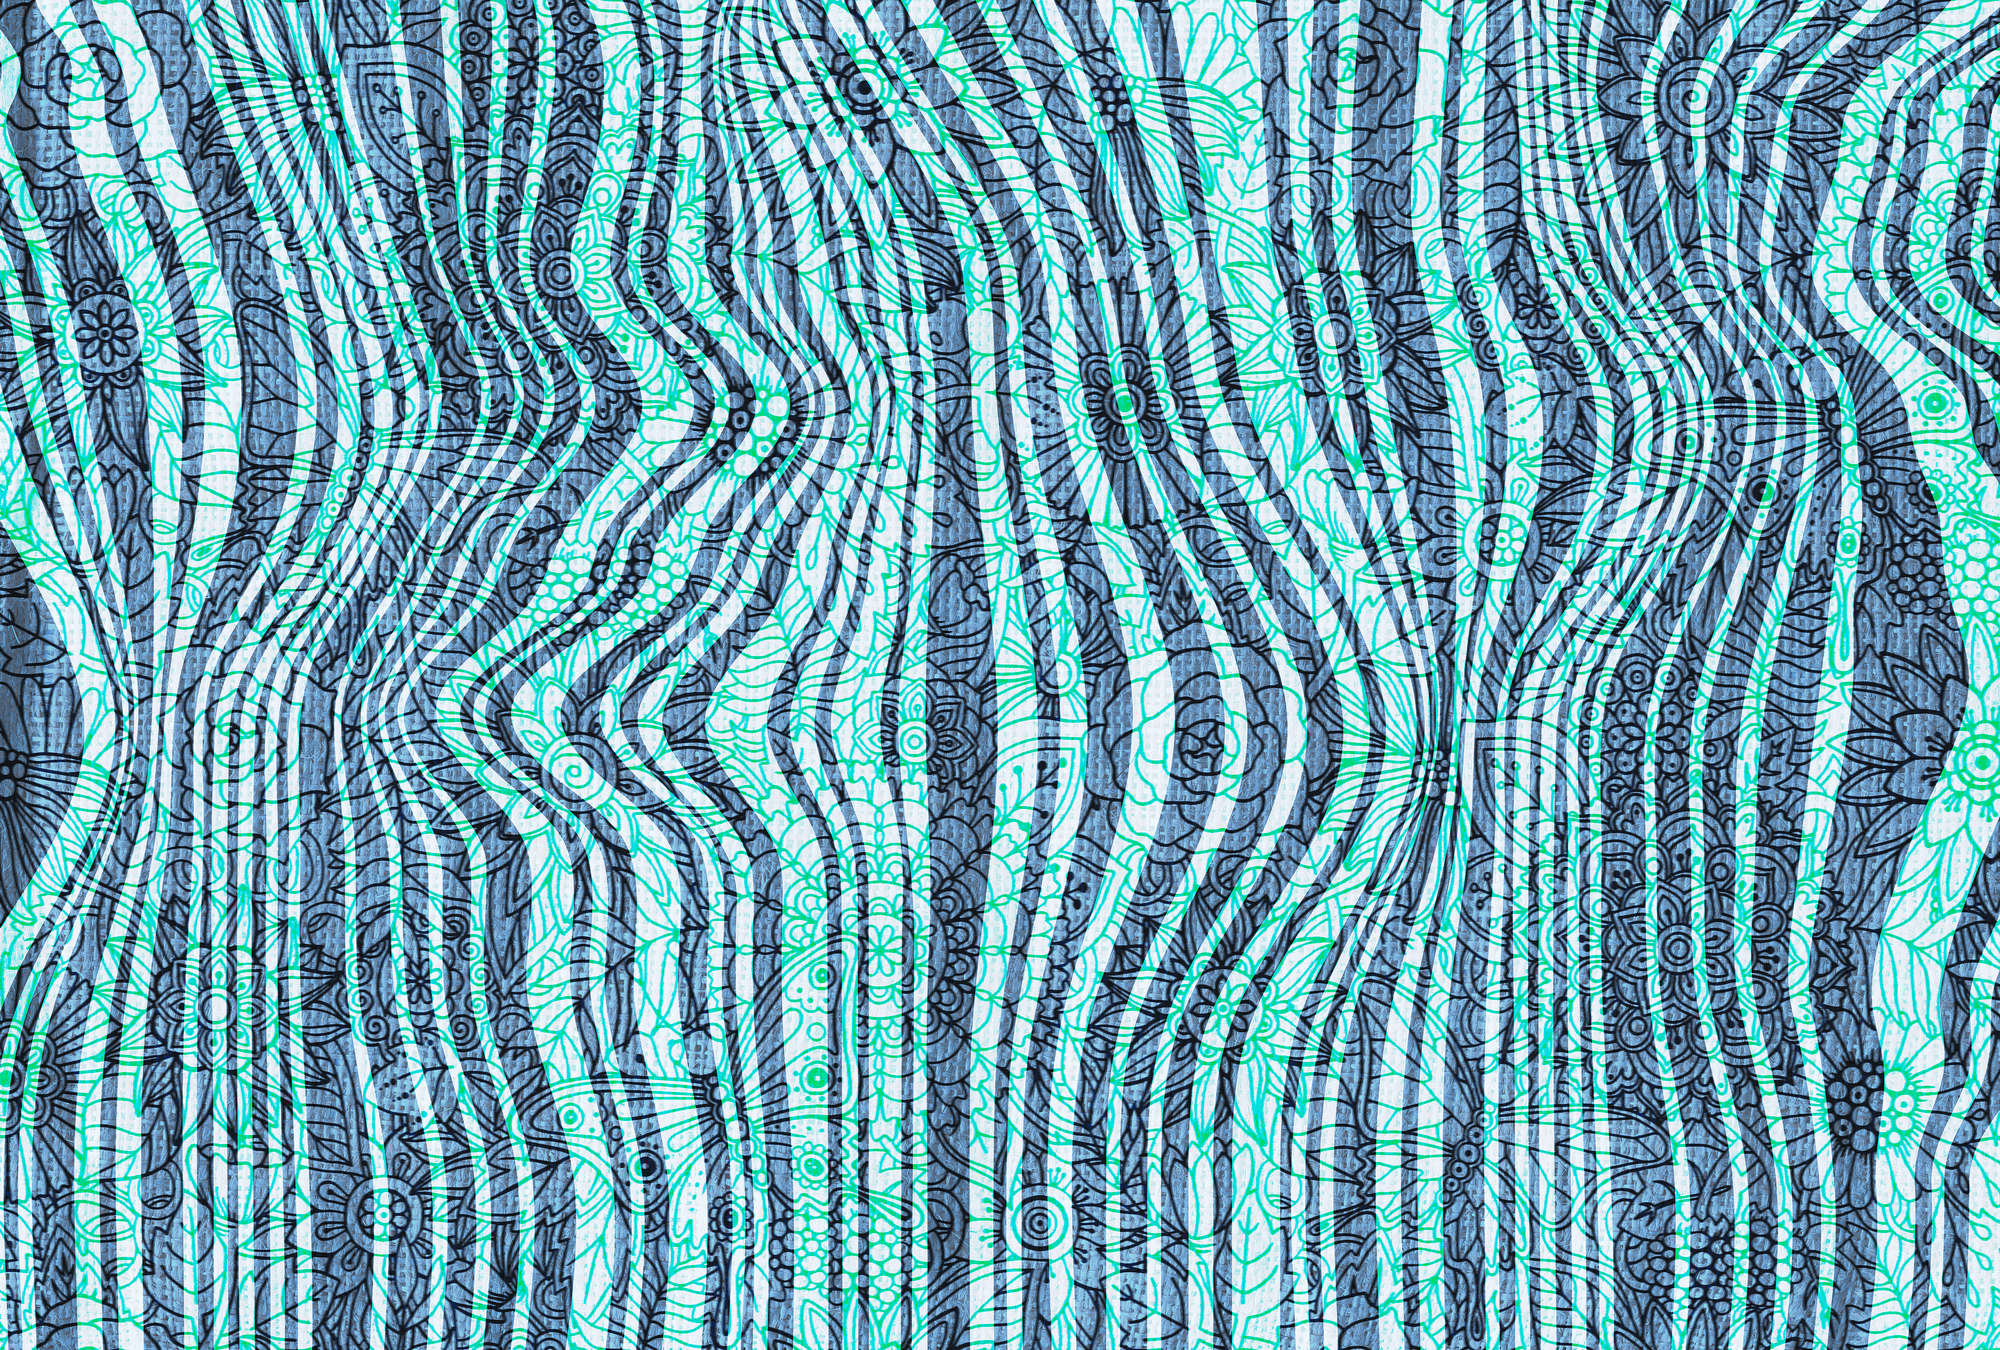             Muurschildering doodle ontwerp, lijnpatroon abstract - blauw, groen, zwart
        